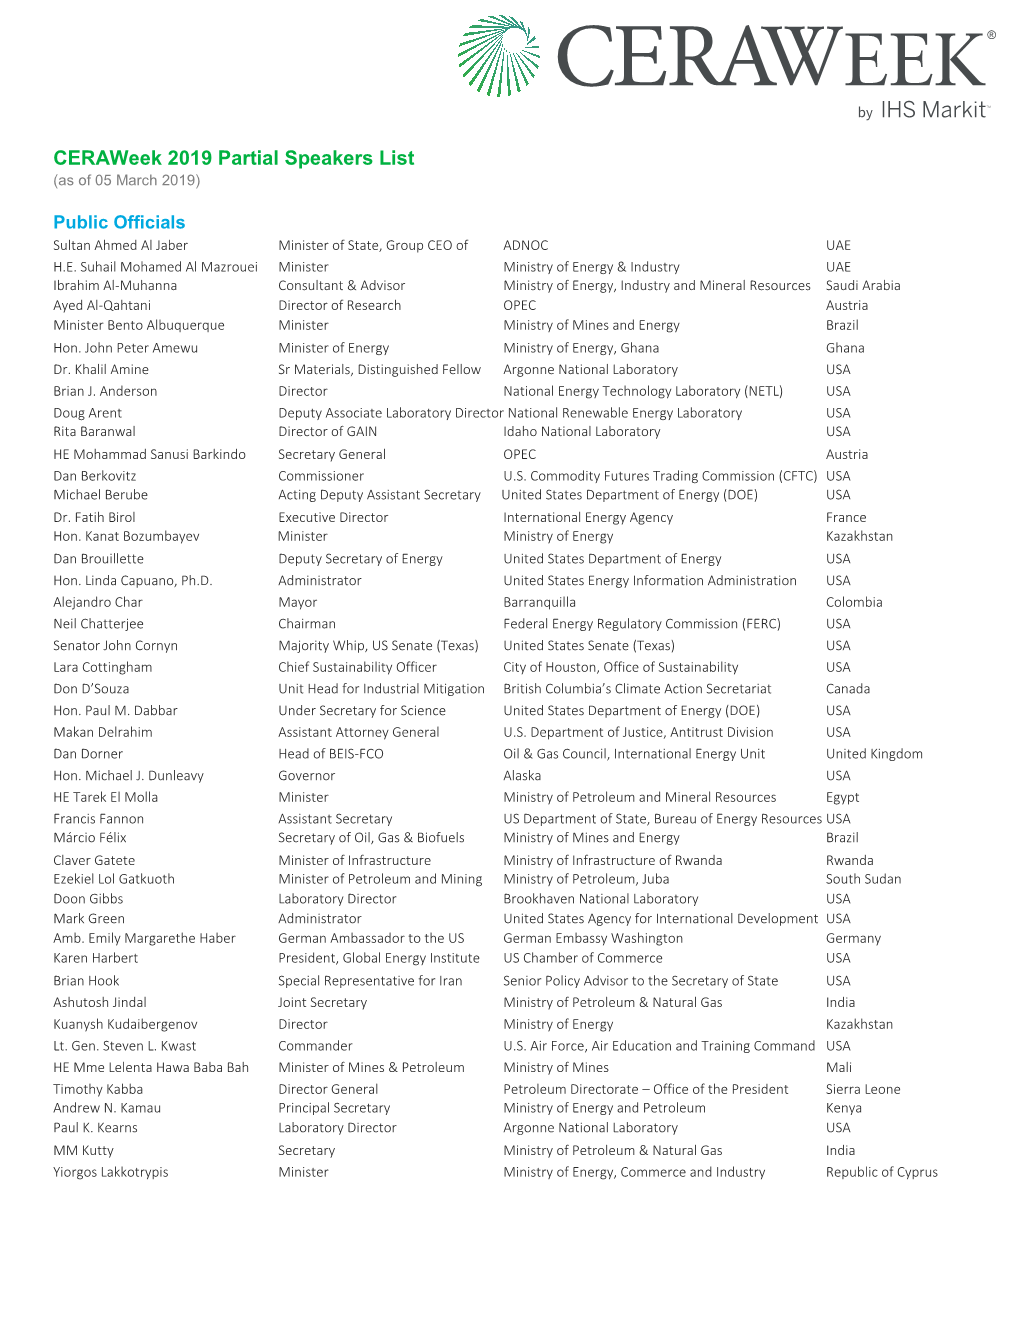 Ceraweek 2019 Partial Speakers List (As of 05 March 2019)